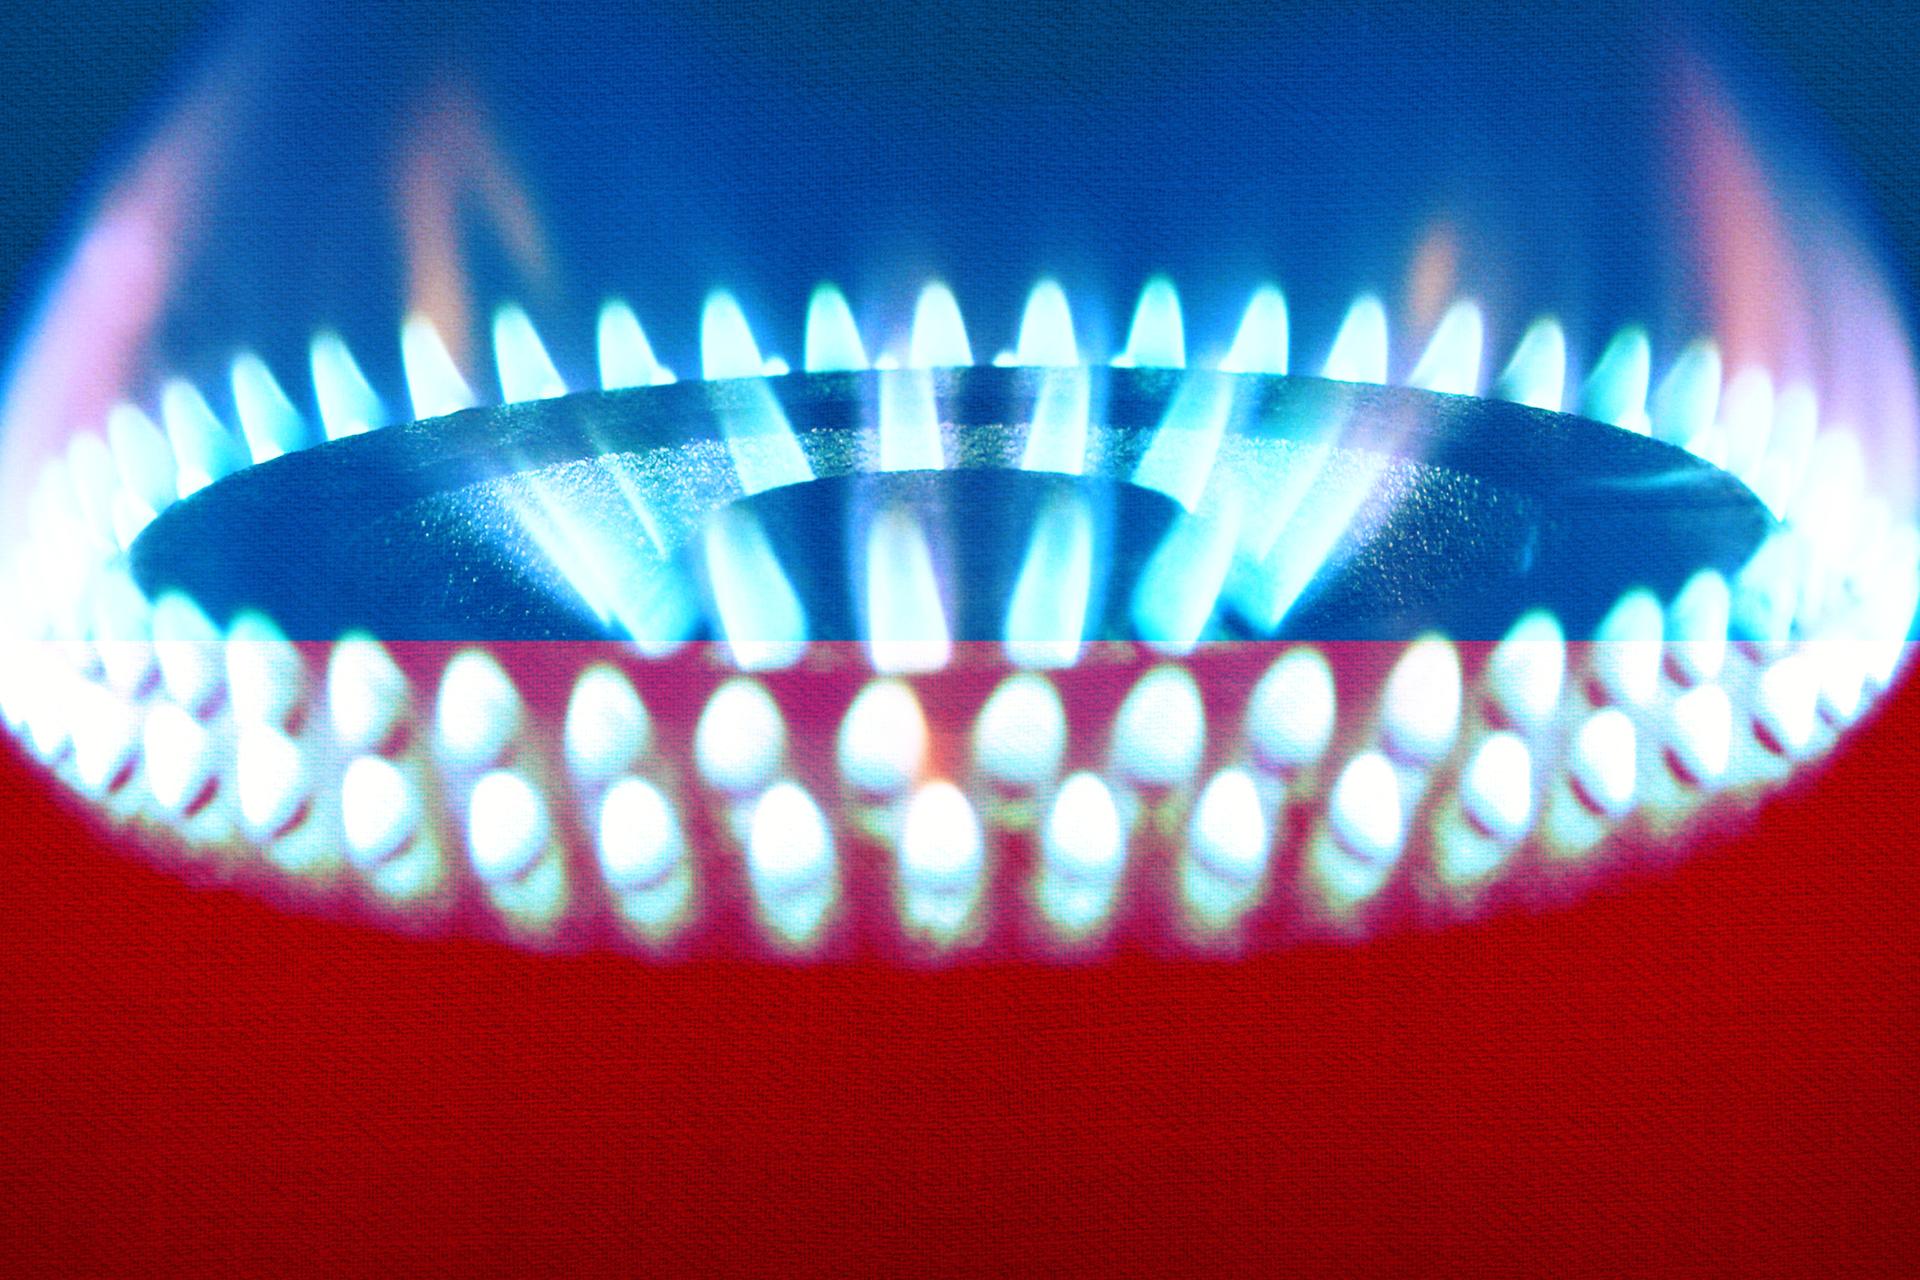 Congelar los precios del gas en 2023 para los hogares sin límite de ingresos y suplemento de gas.  ¿Cuyo?  ¿Cuál es el tope del precio de la gasolina en 2023?  El gobierno aprobó el proyecto de ley